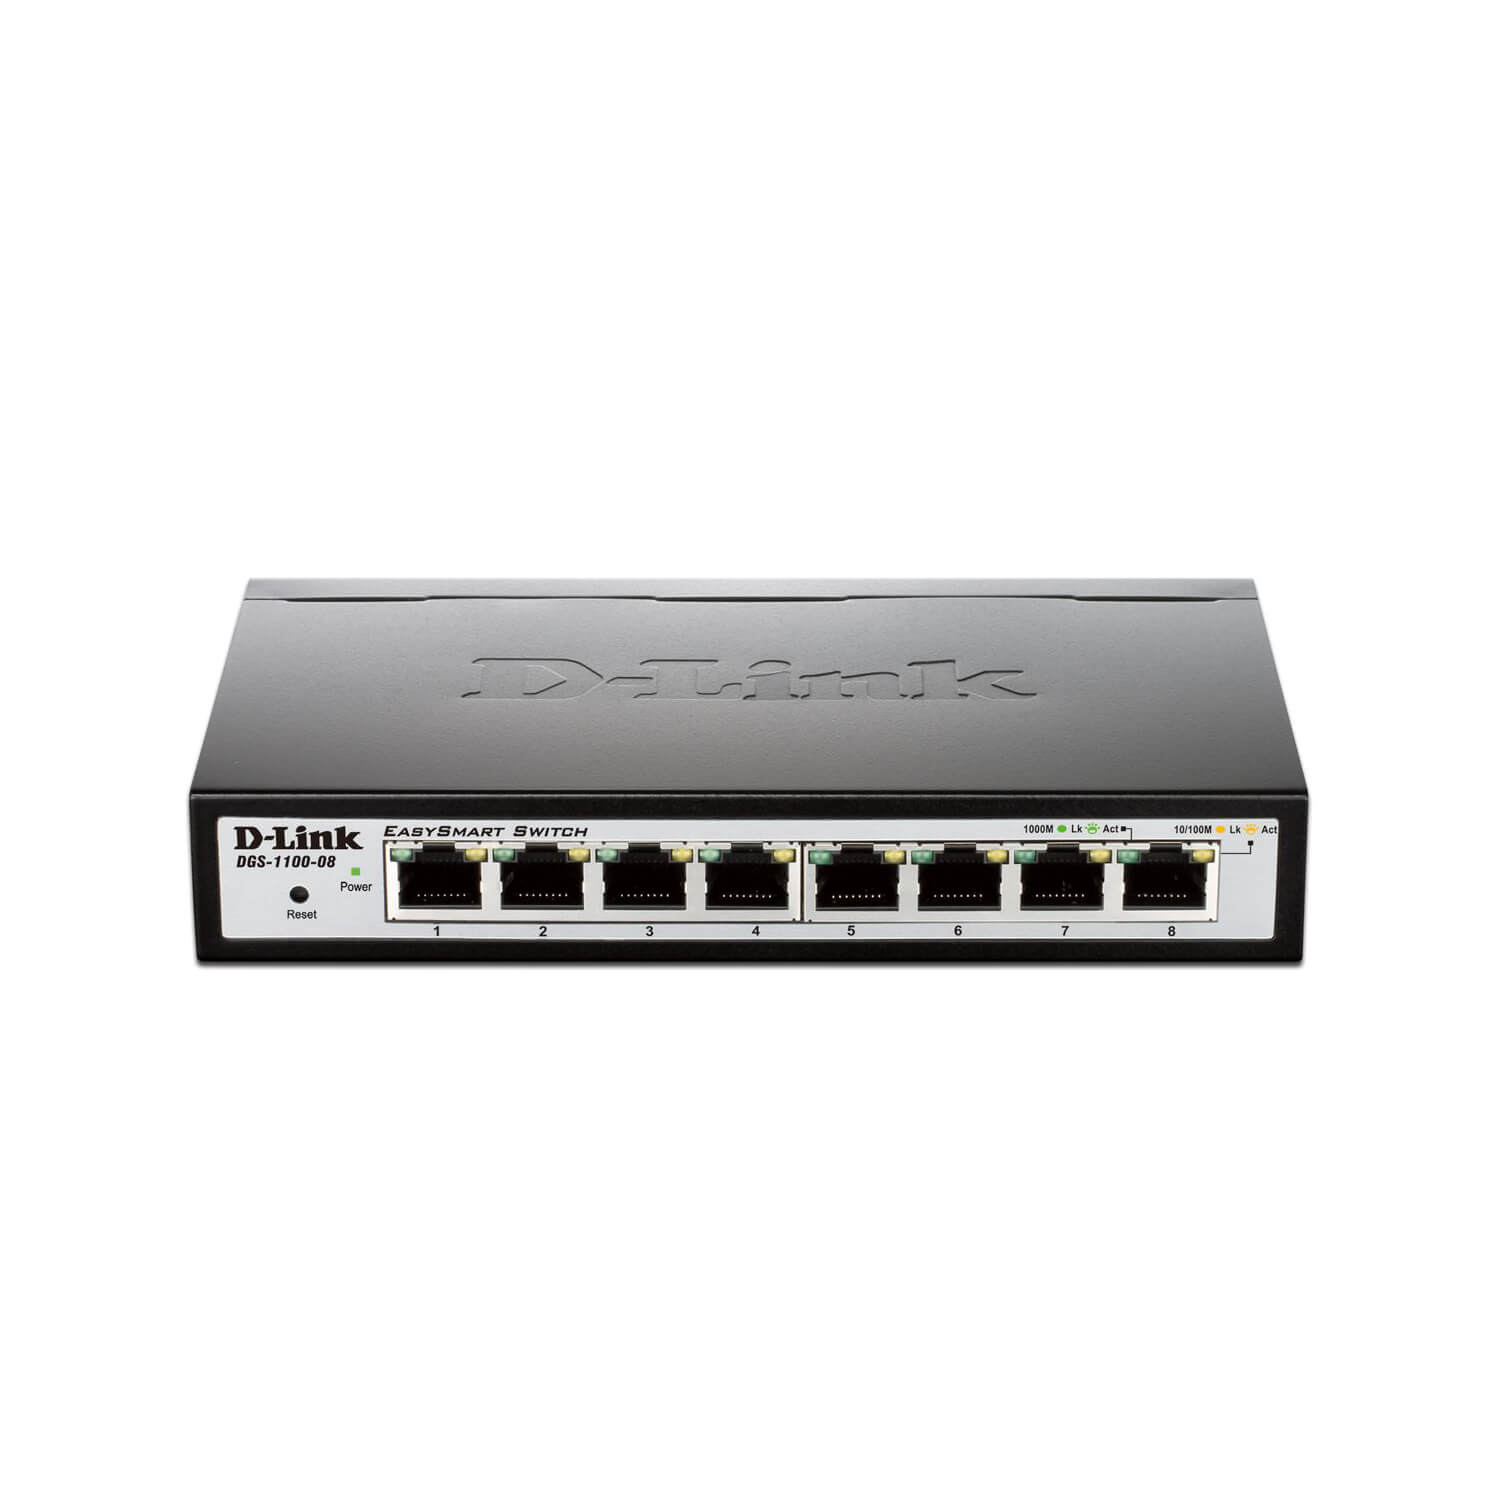  Switch D-Link DGS-1100-08, 8 porturi, 10/100/1000 Mbps 